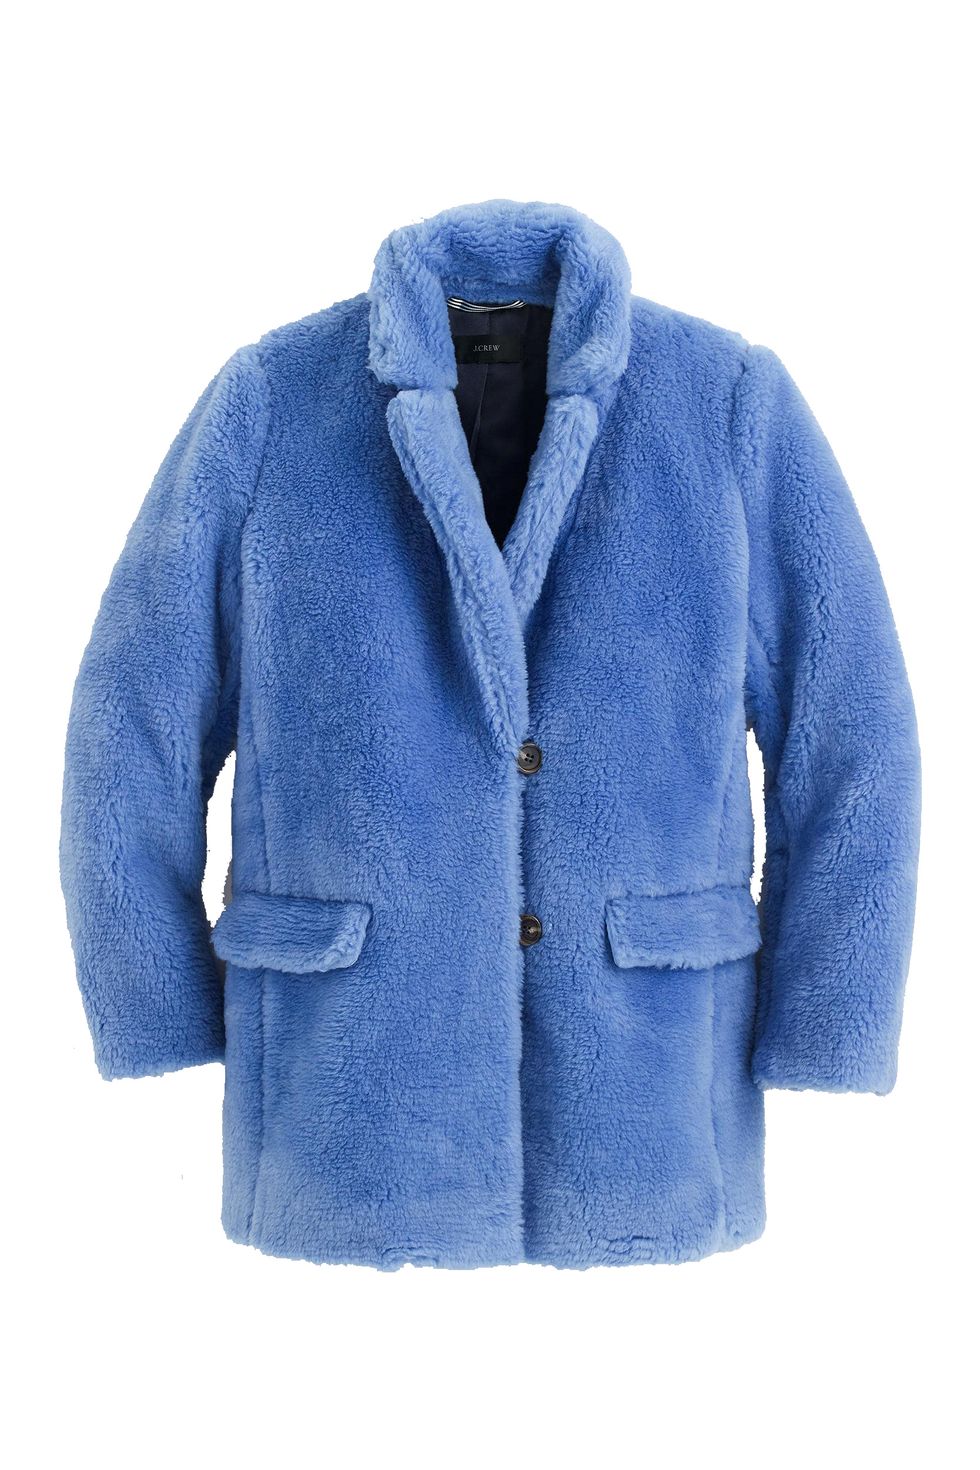 Teddy Bear Faux Shearling Coats - Faux Fur Coats